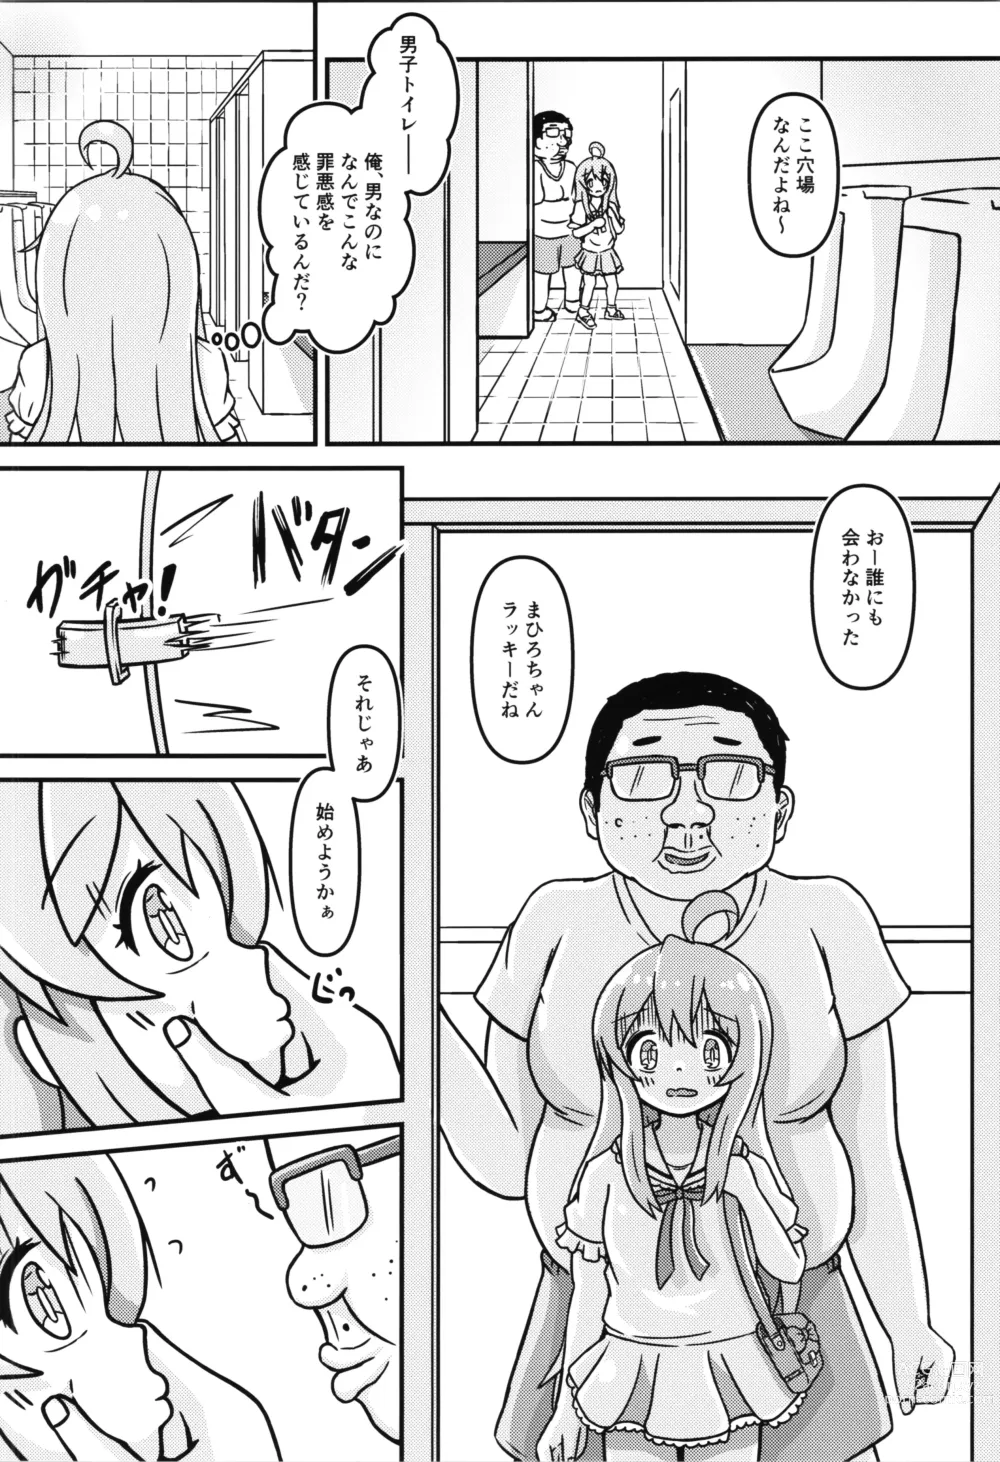 Page 14 of doujinshi Mahiro-chans bouncy ××× experience